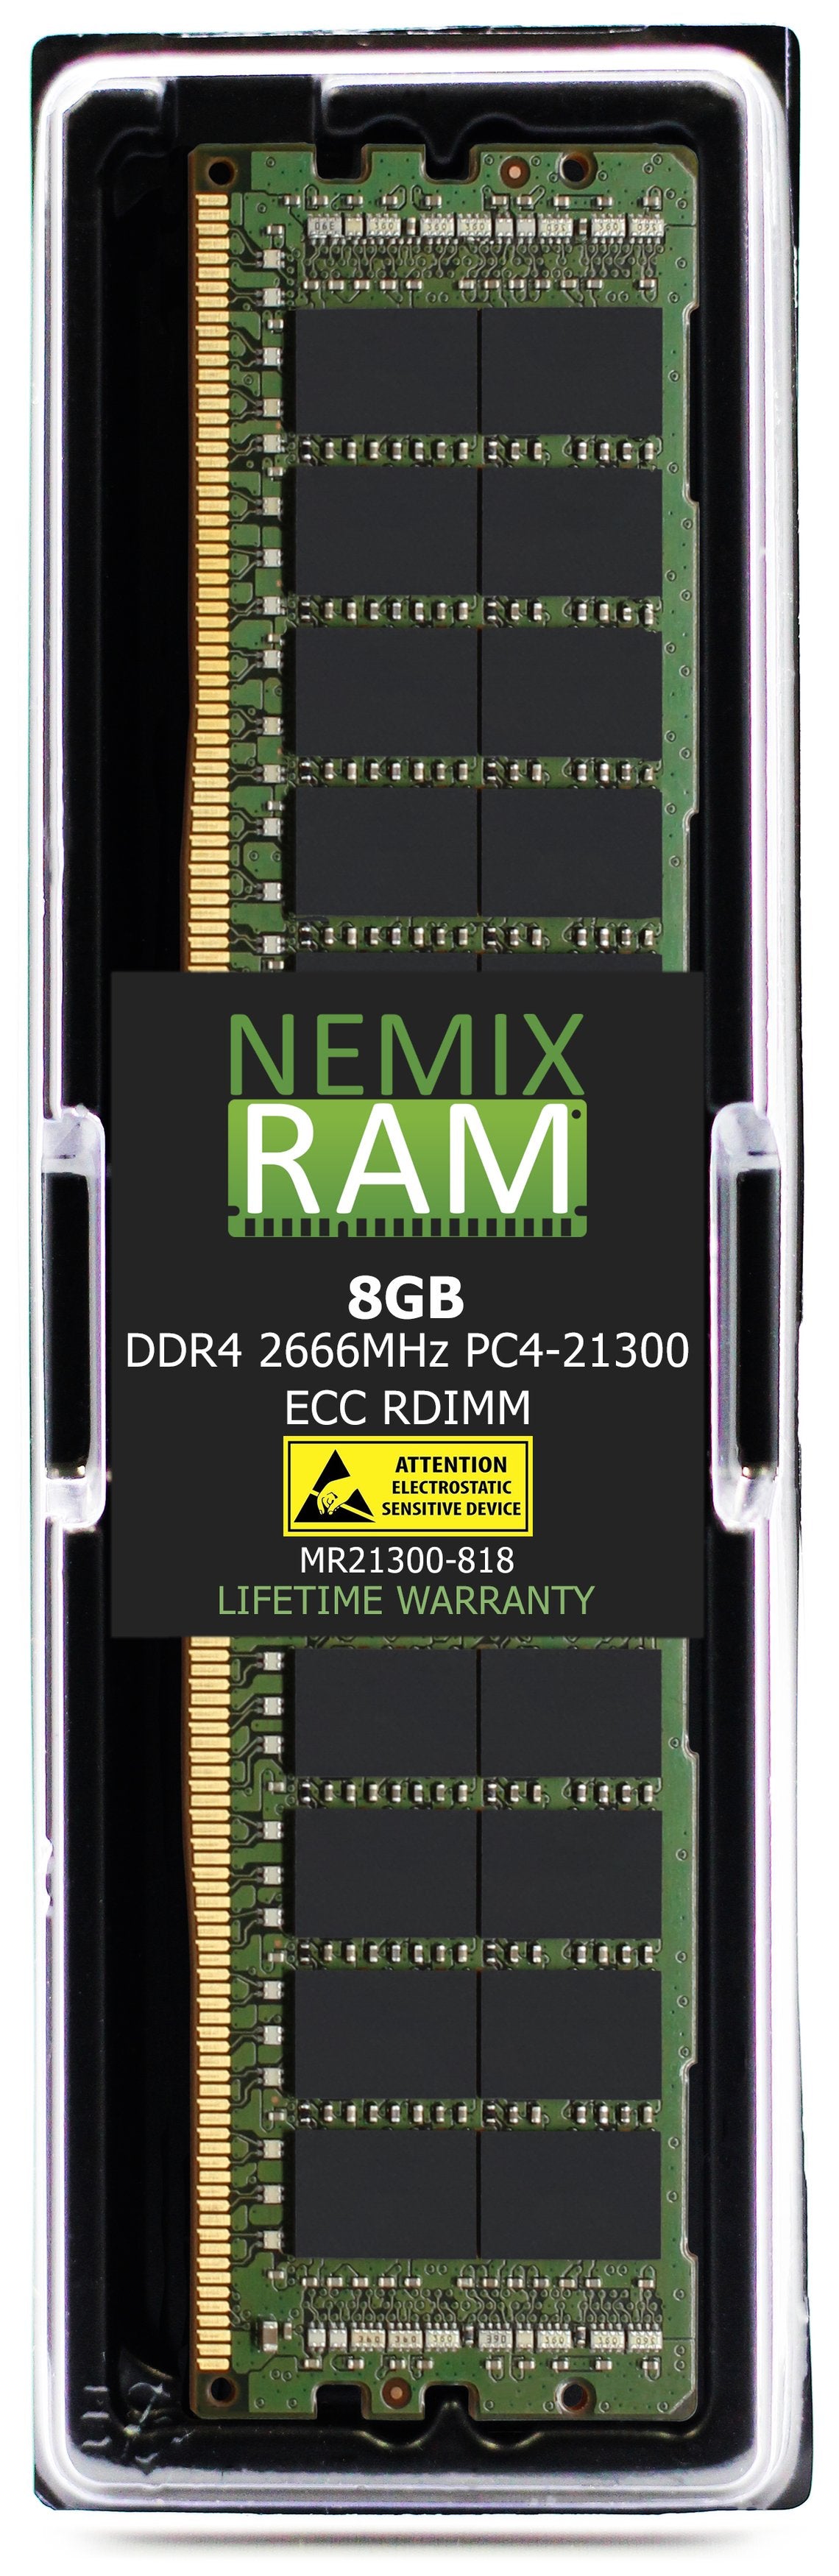 8GB DDR4 2666MHZ PC4-21300 RDIMM Compatible with Supermicro MEM-DR464L-CL01-ER29